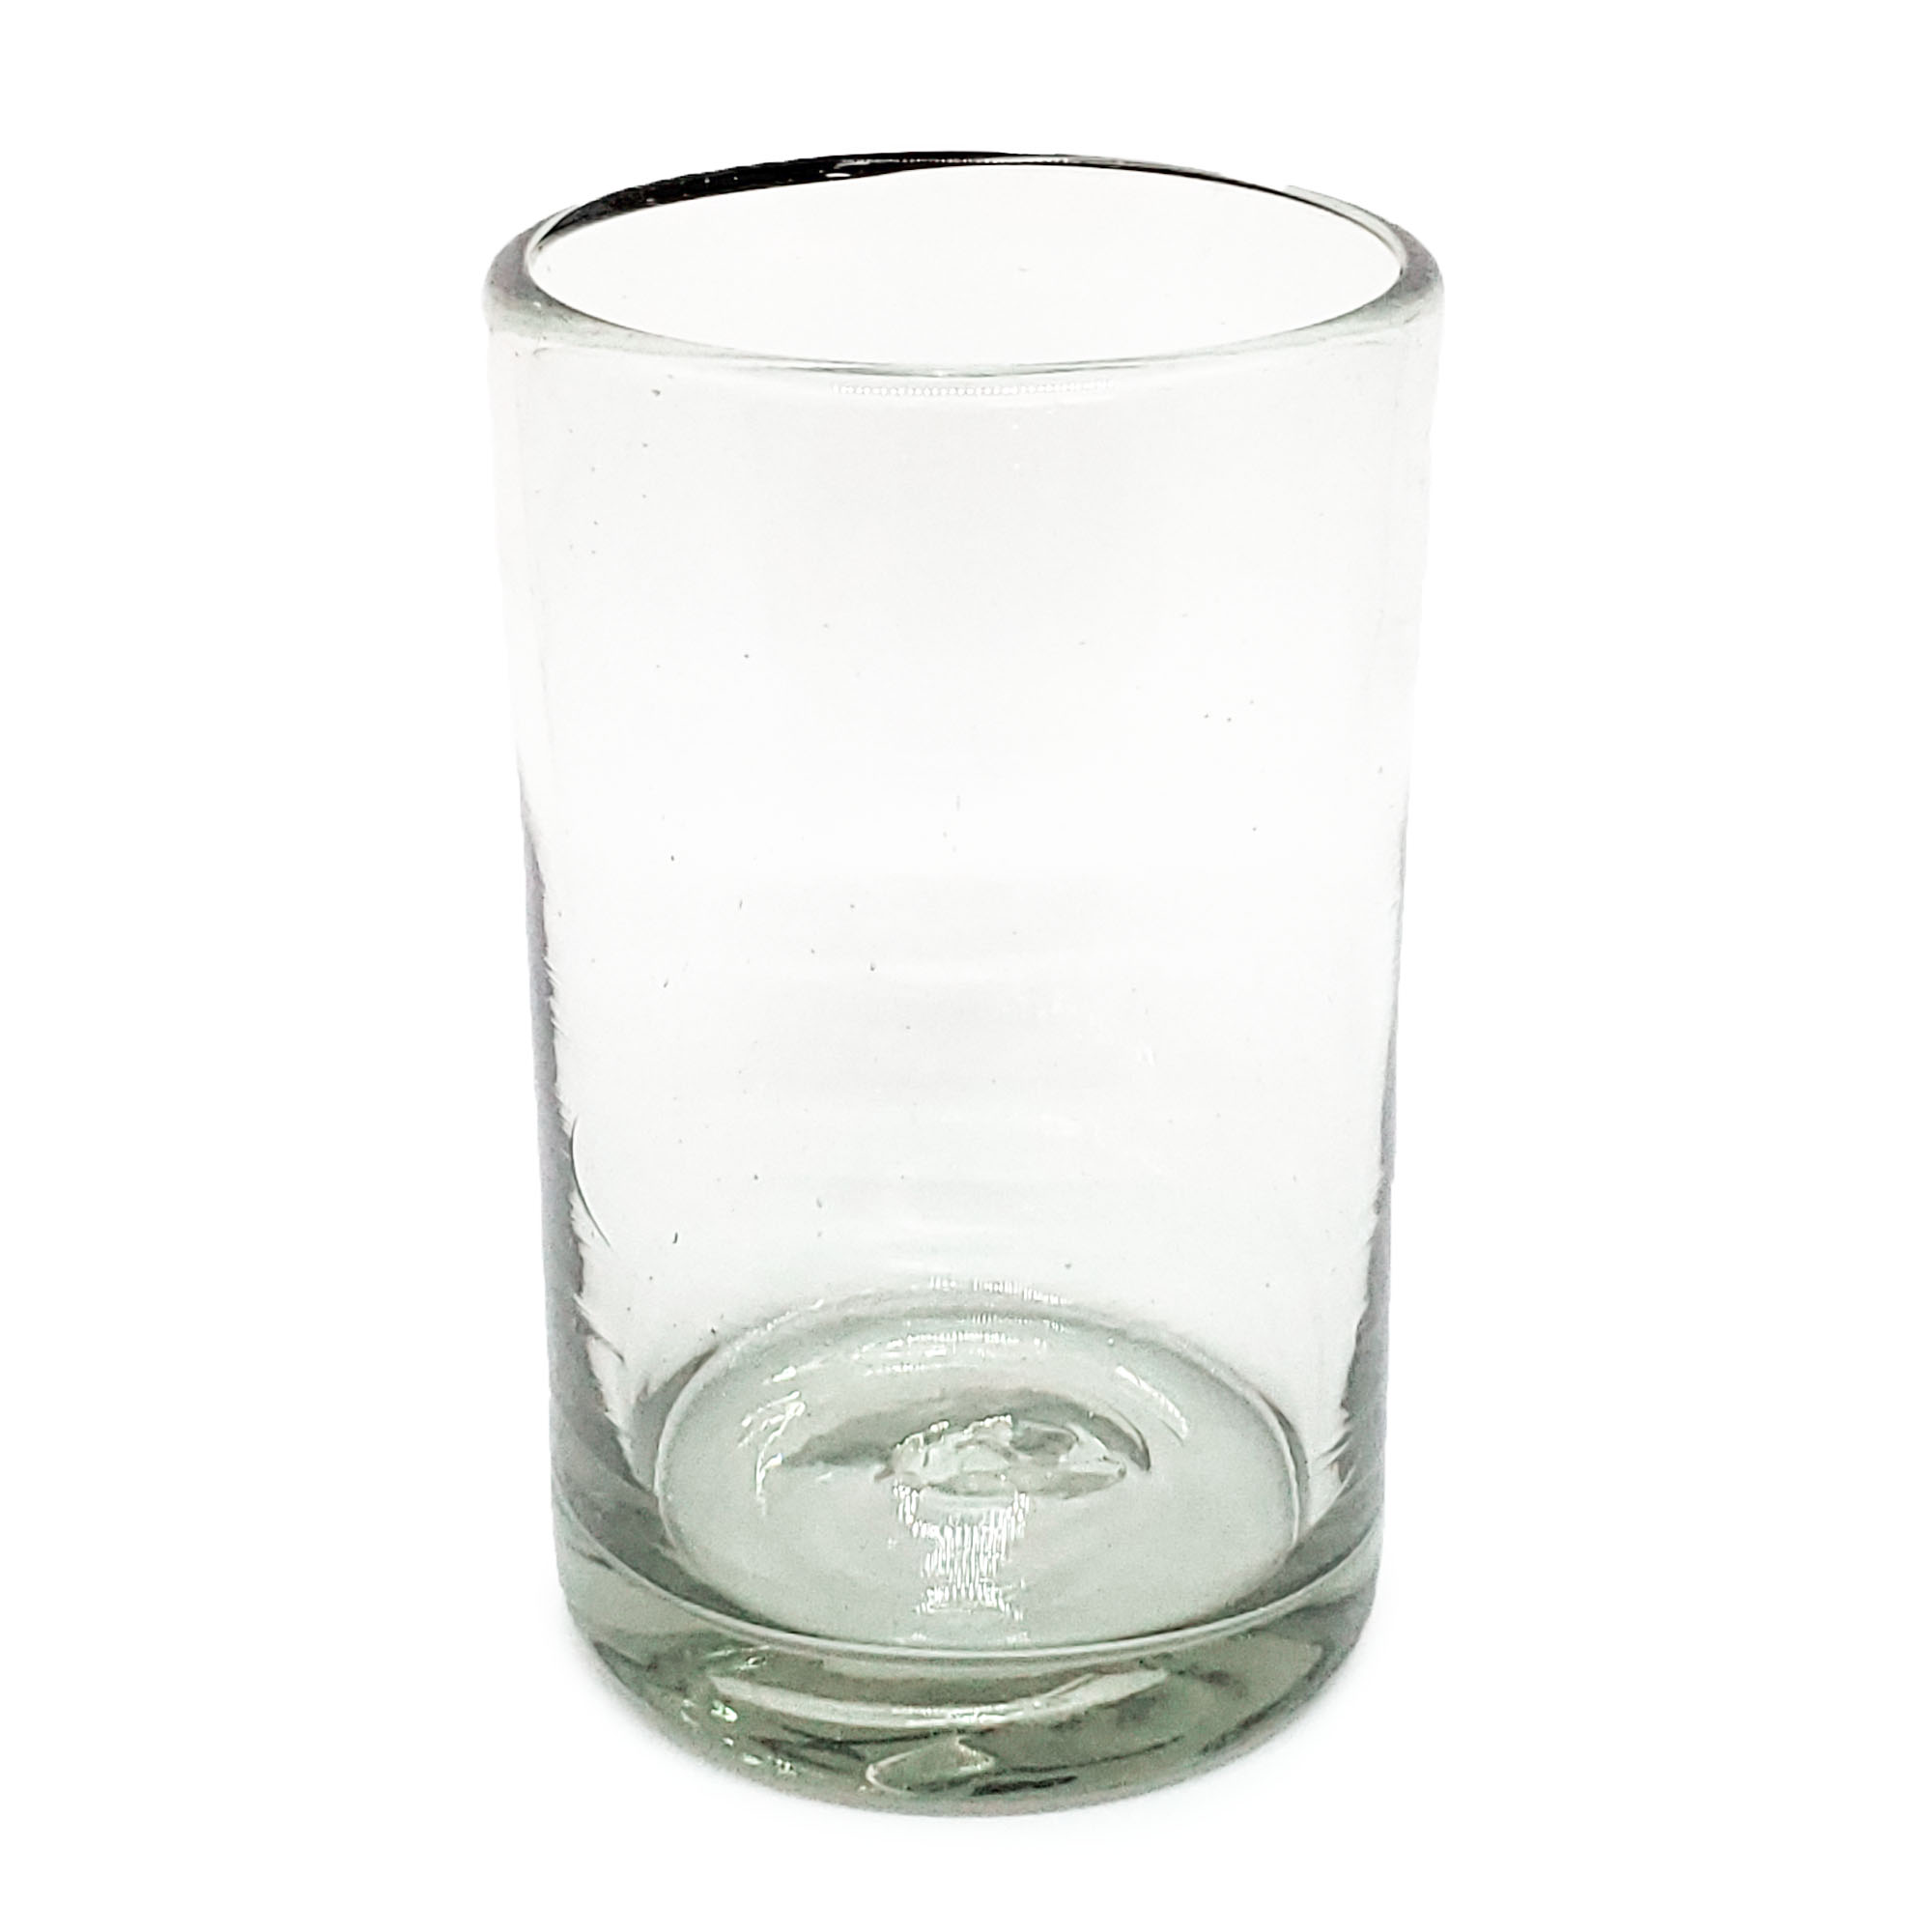 Color Transparente al Mayoreo / vasos grandes transparentes / Éstos artesanales vasos le darán un toque clásico a su bebida favorita.